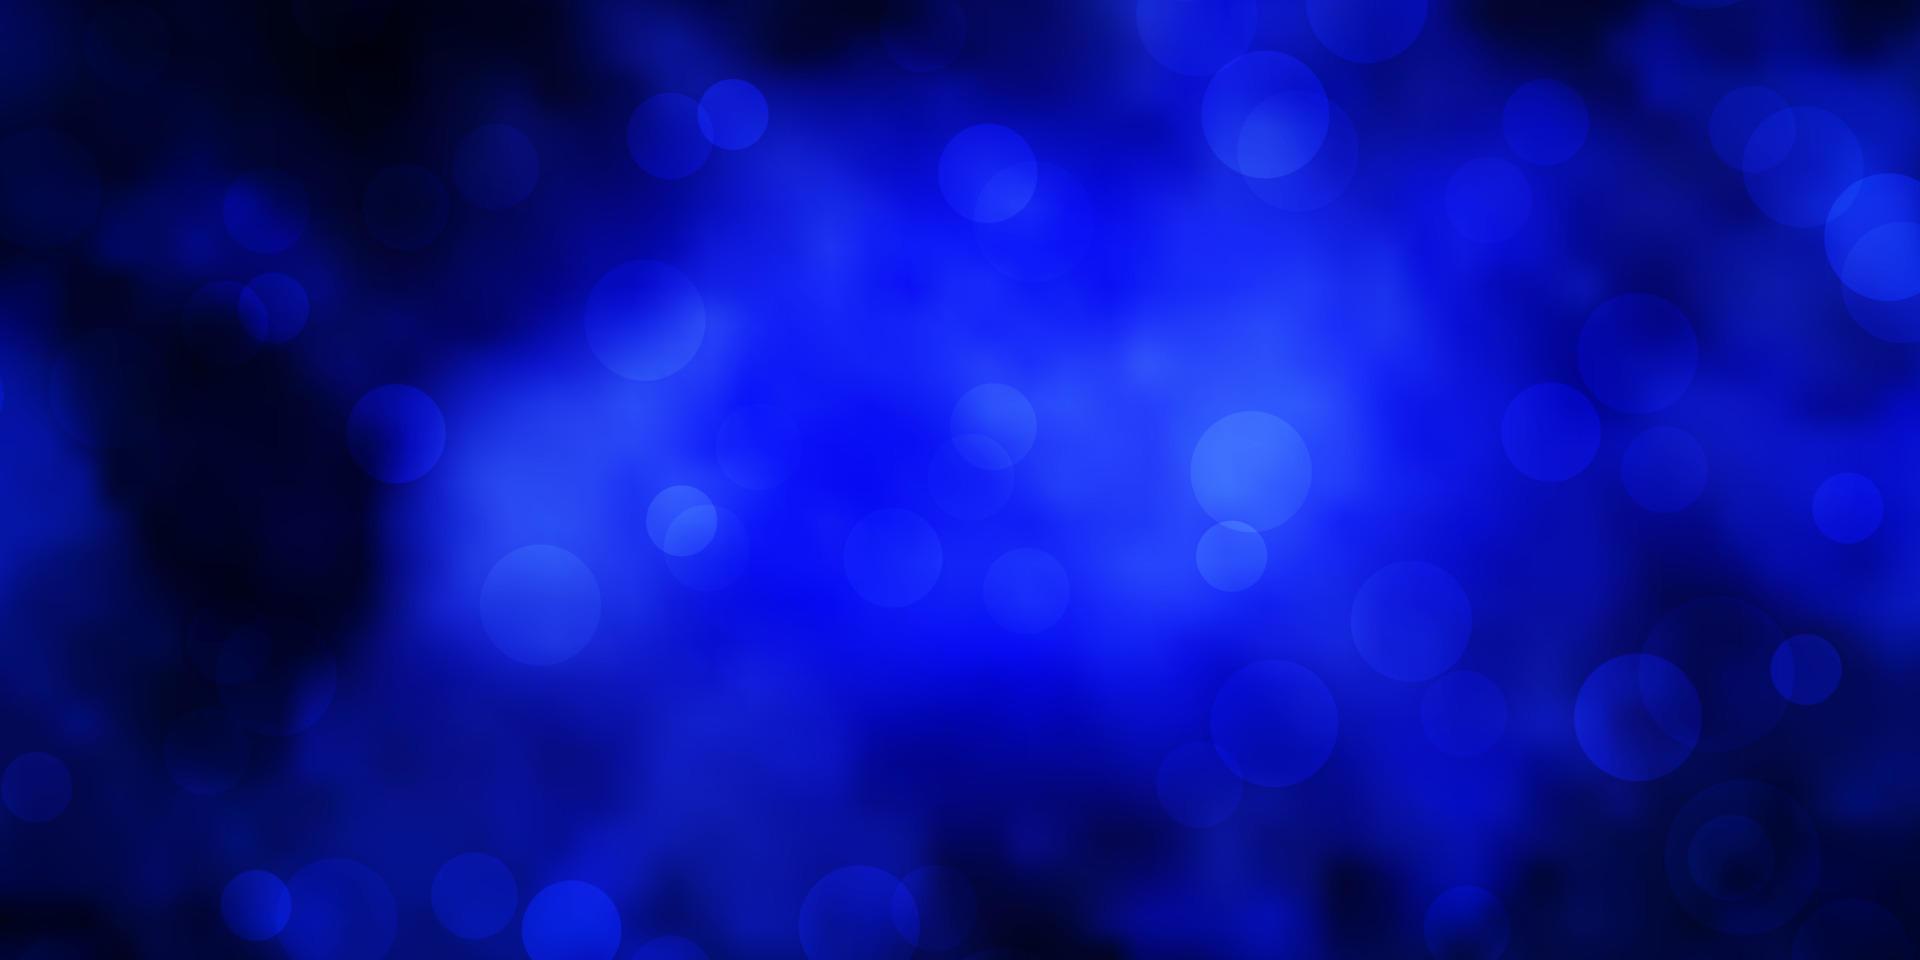 Telón de fondo de vector azul oscuro con puntos.